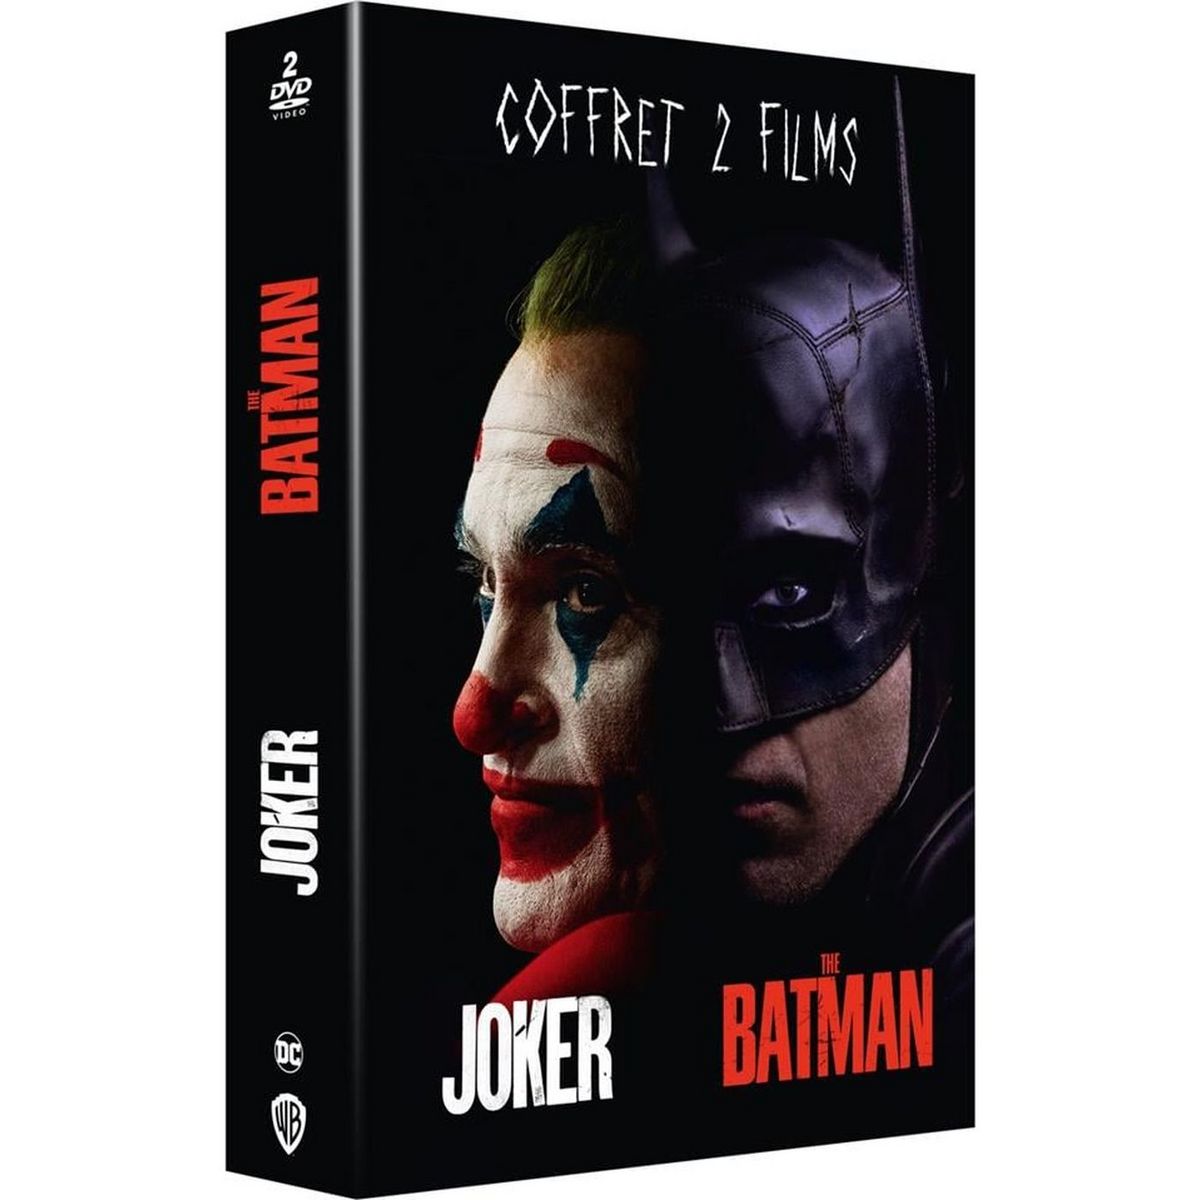 The Batman / Joker DVD